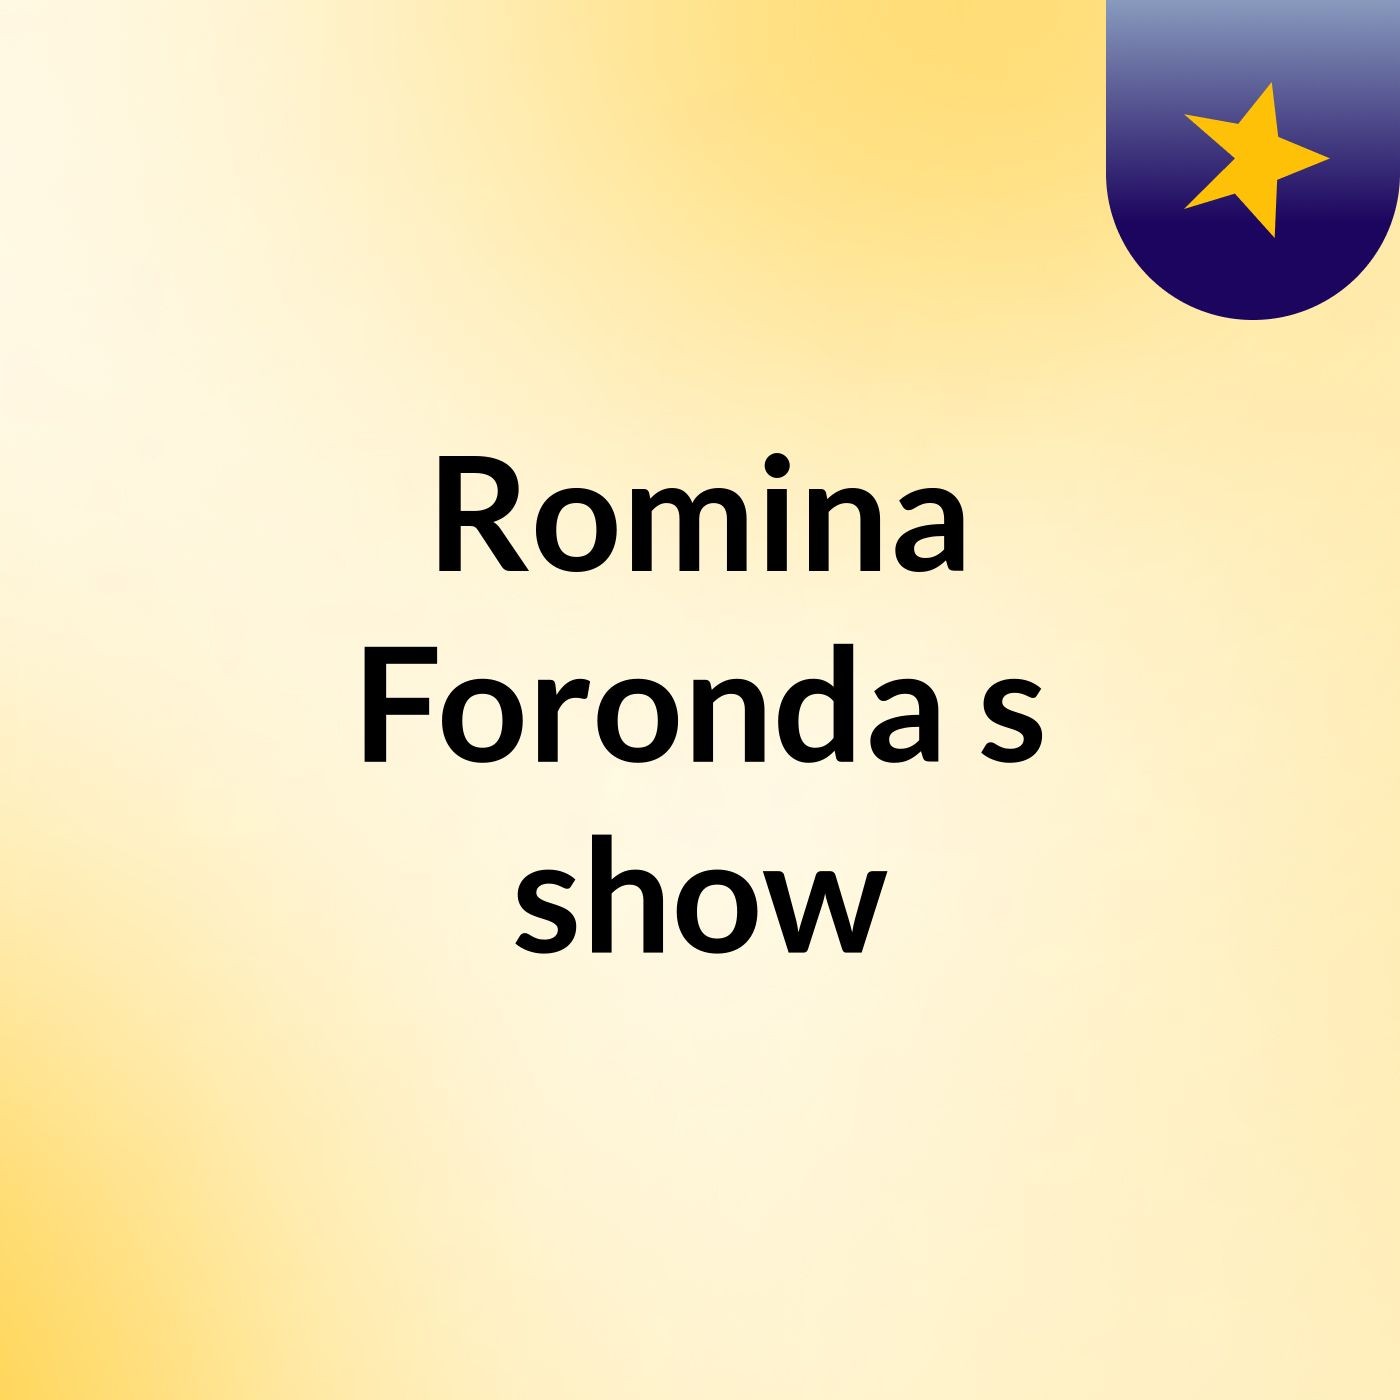 Romina Foronda's show